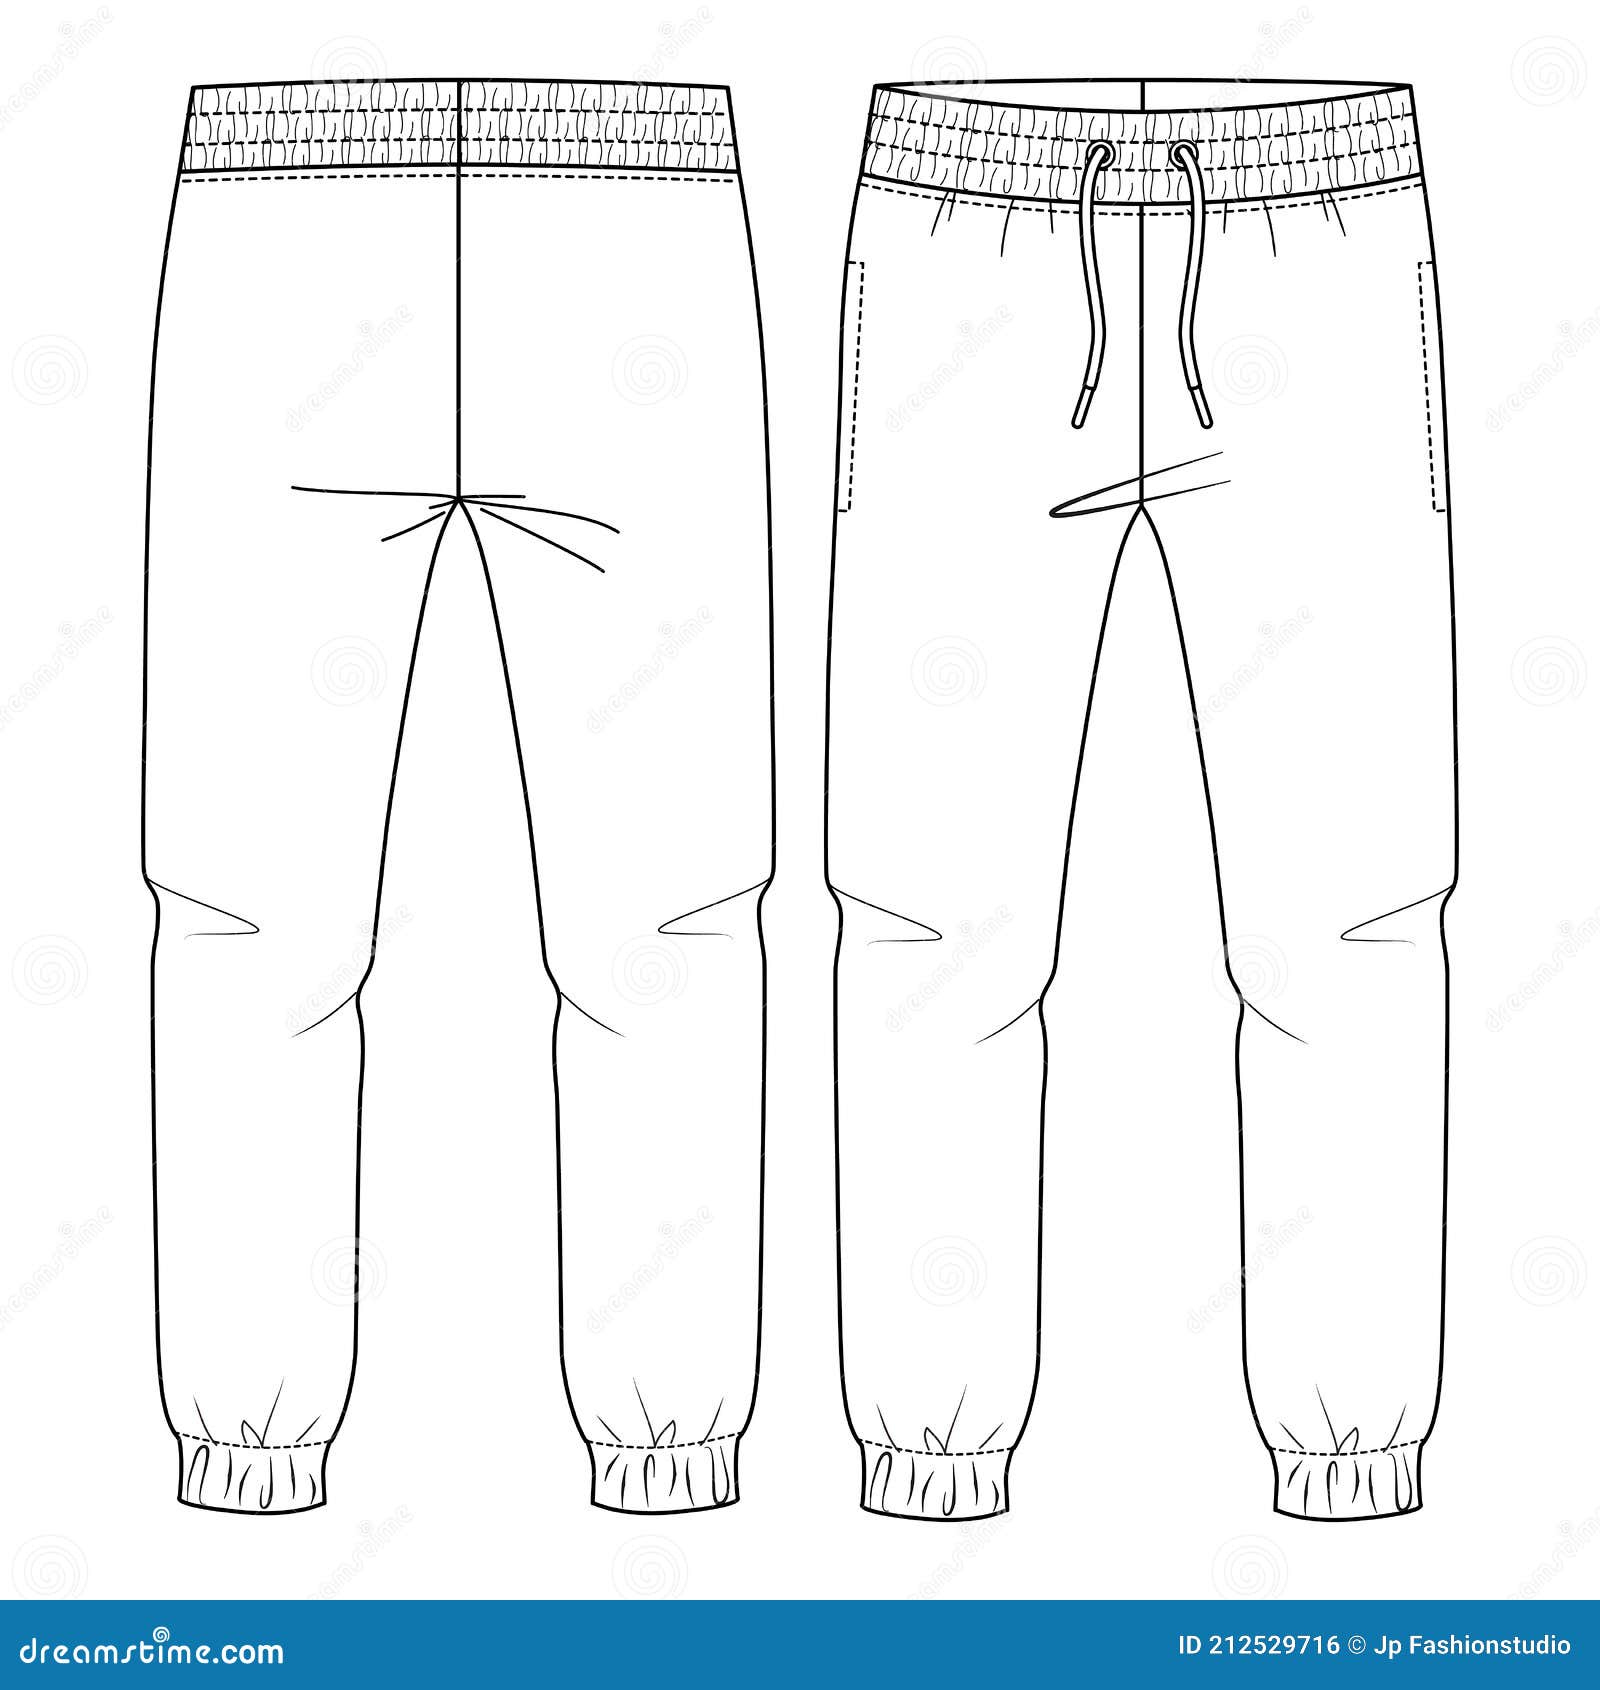 Premium Vector | Draped pants pants flat drawing fashion flat sketches